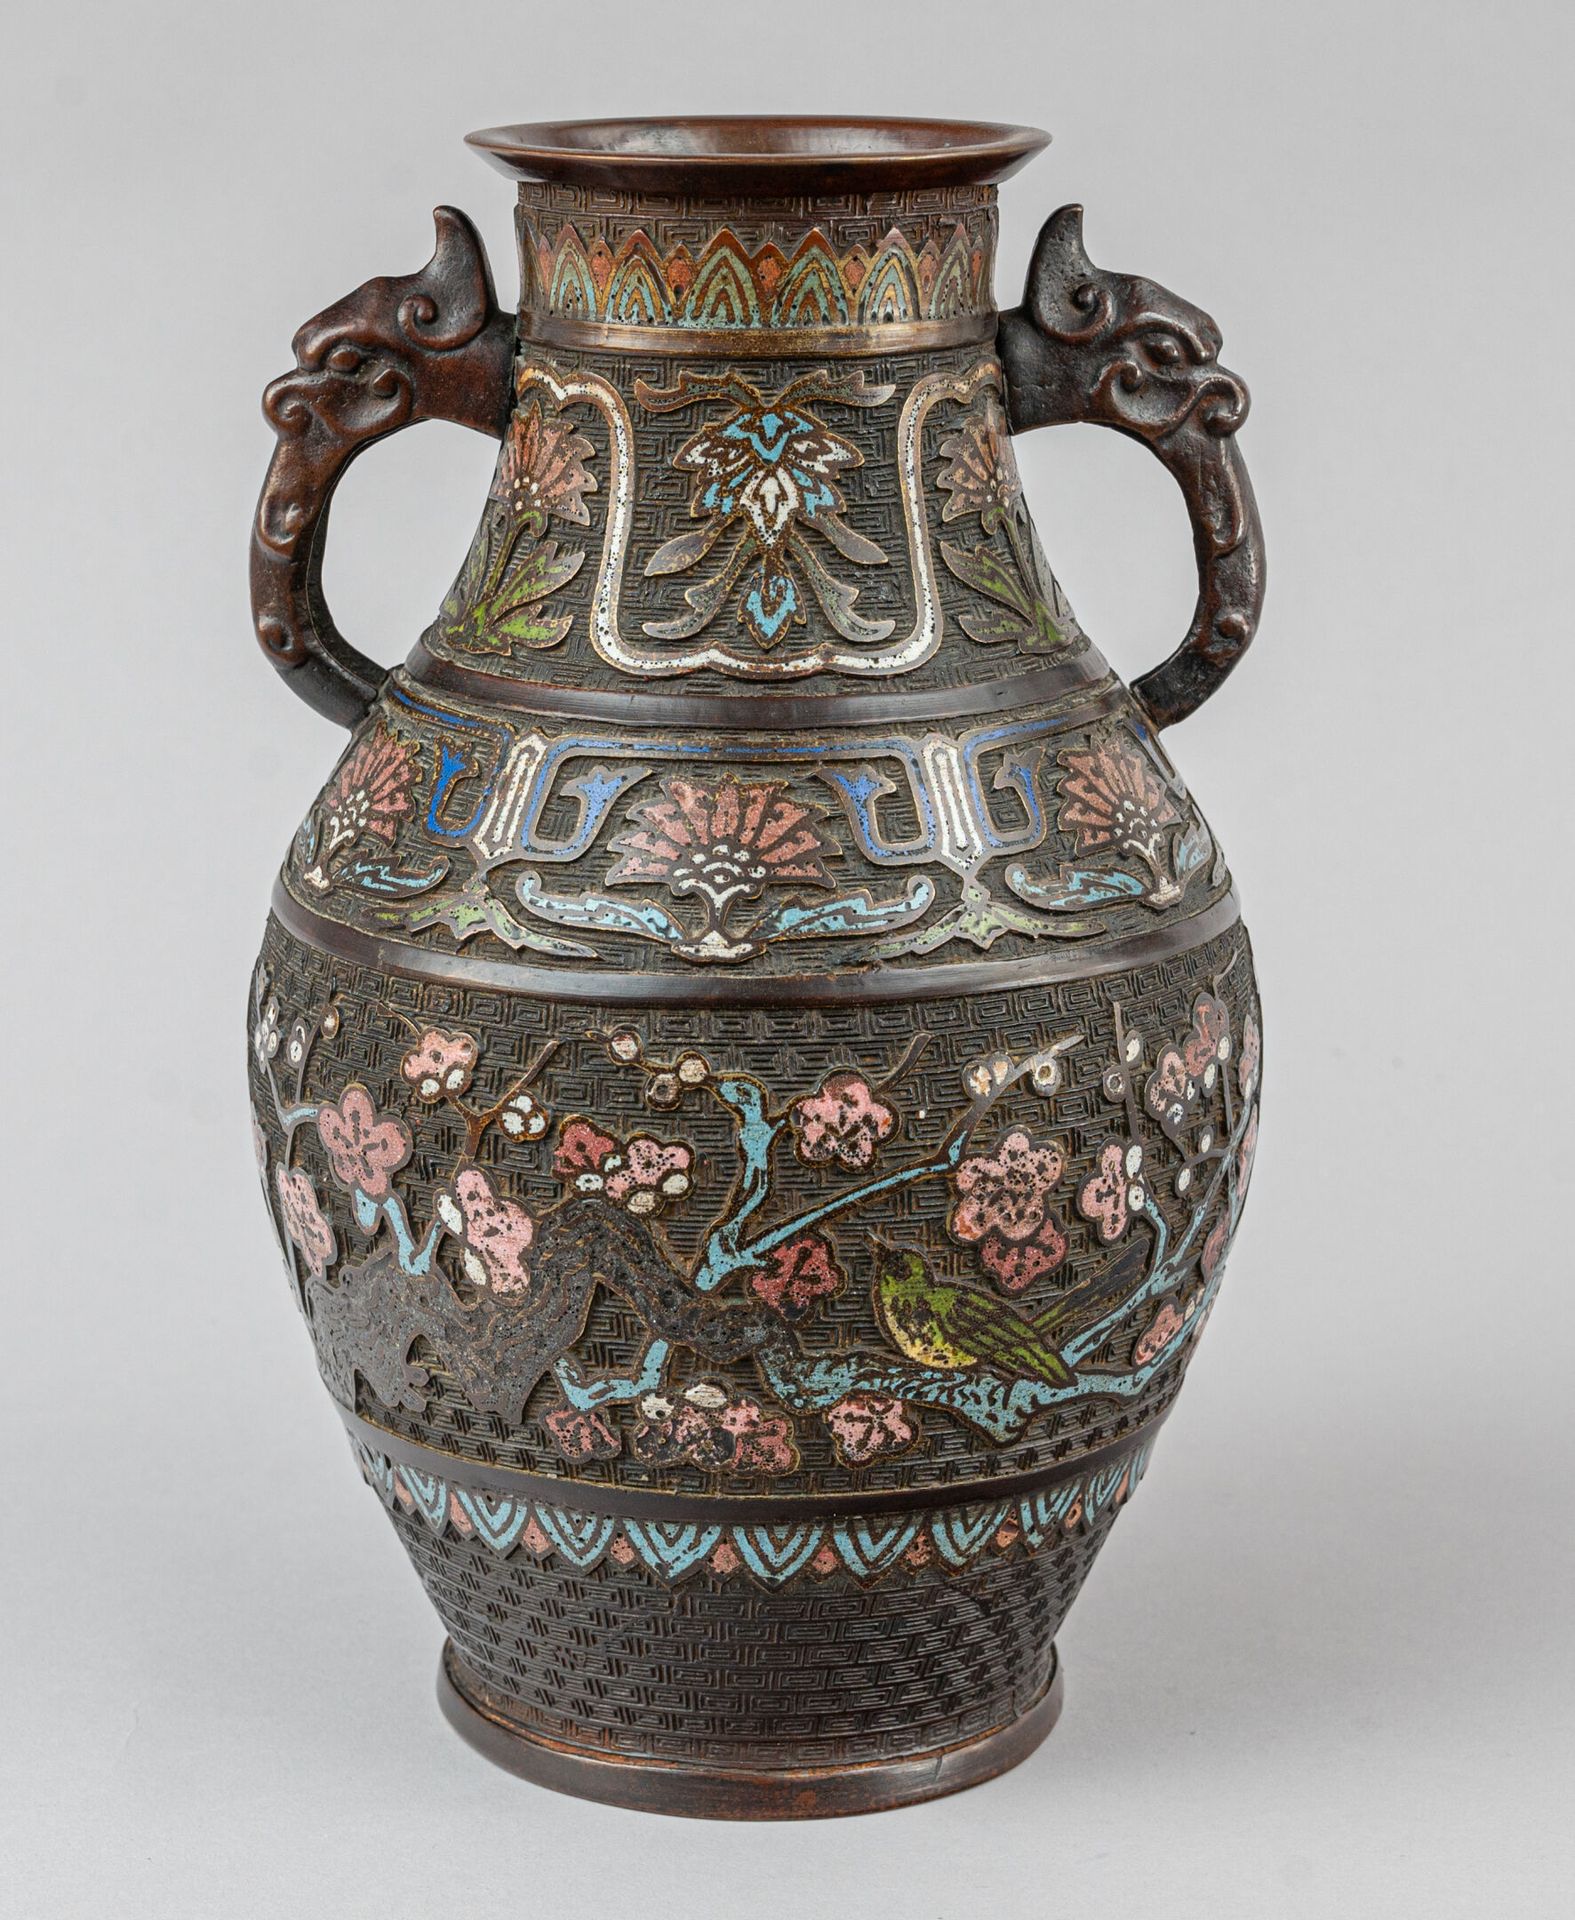 Null 青铜和内填珐琅花瓶，日本，19 世纪
古风造型，饰有梅花枝上的小鸟和莲花，把手饰有奇美拉头
H.31 厘米 
珐琅磨损
明代印章